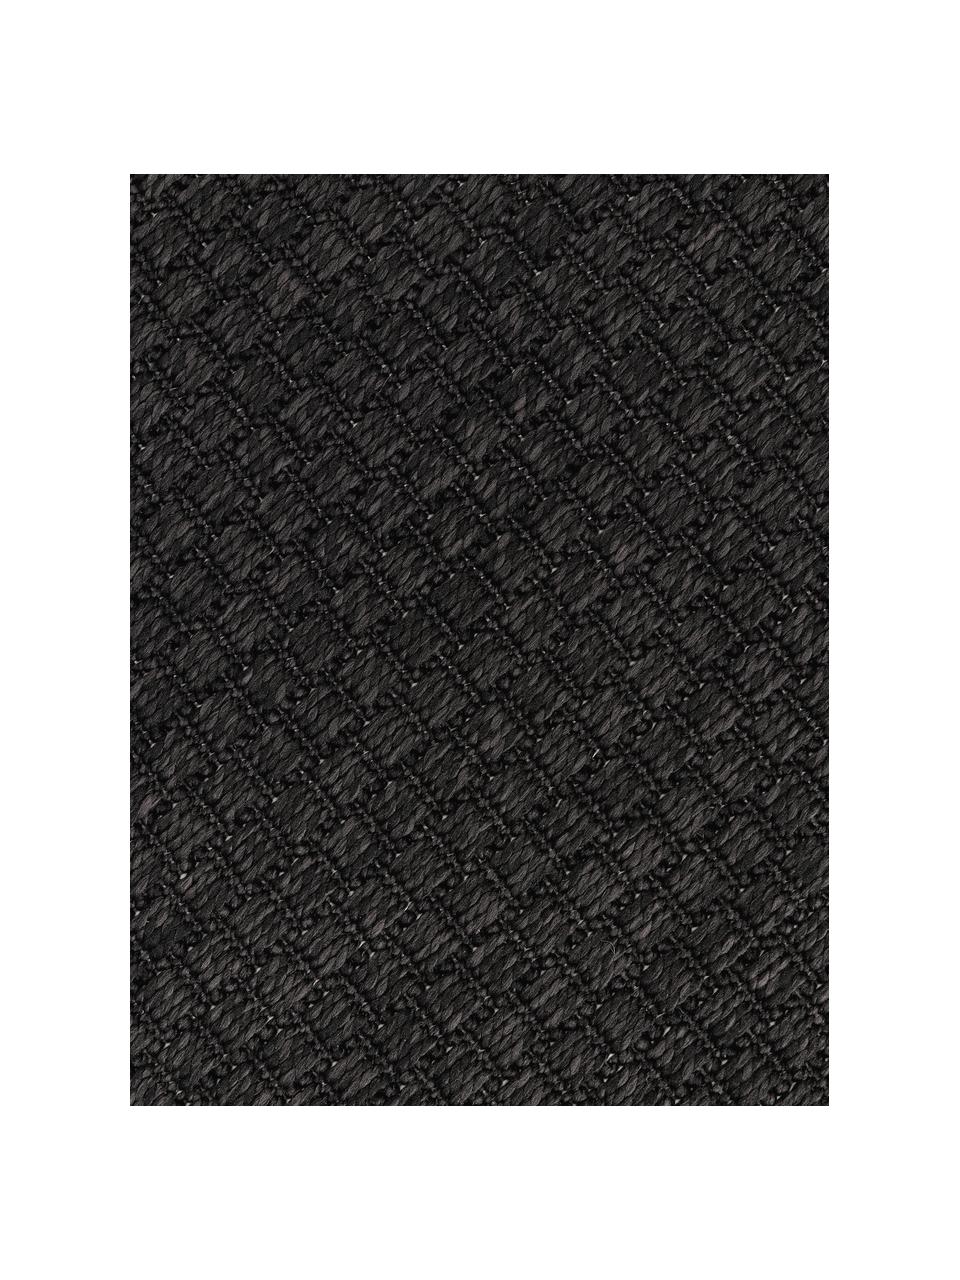 Kulatý interiérový/exteriérový koberec Toronto, 100 % polypropylen, Antracitová, Ø 120 cm (velikost S)